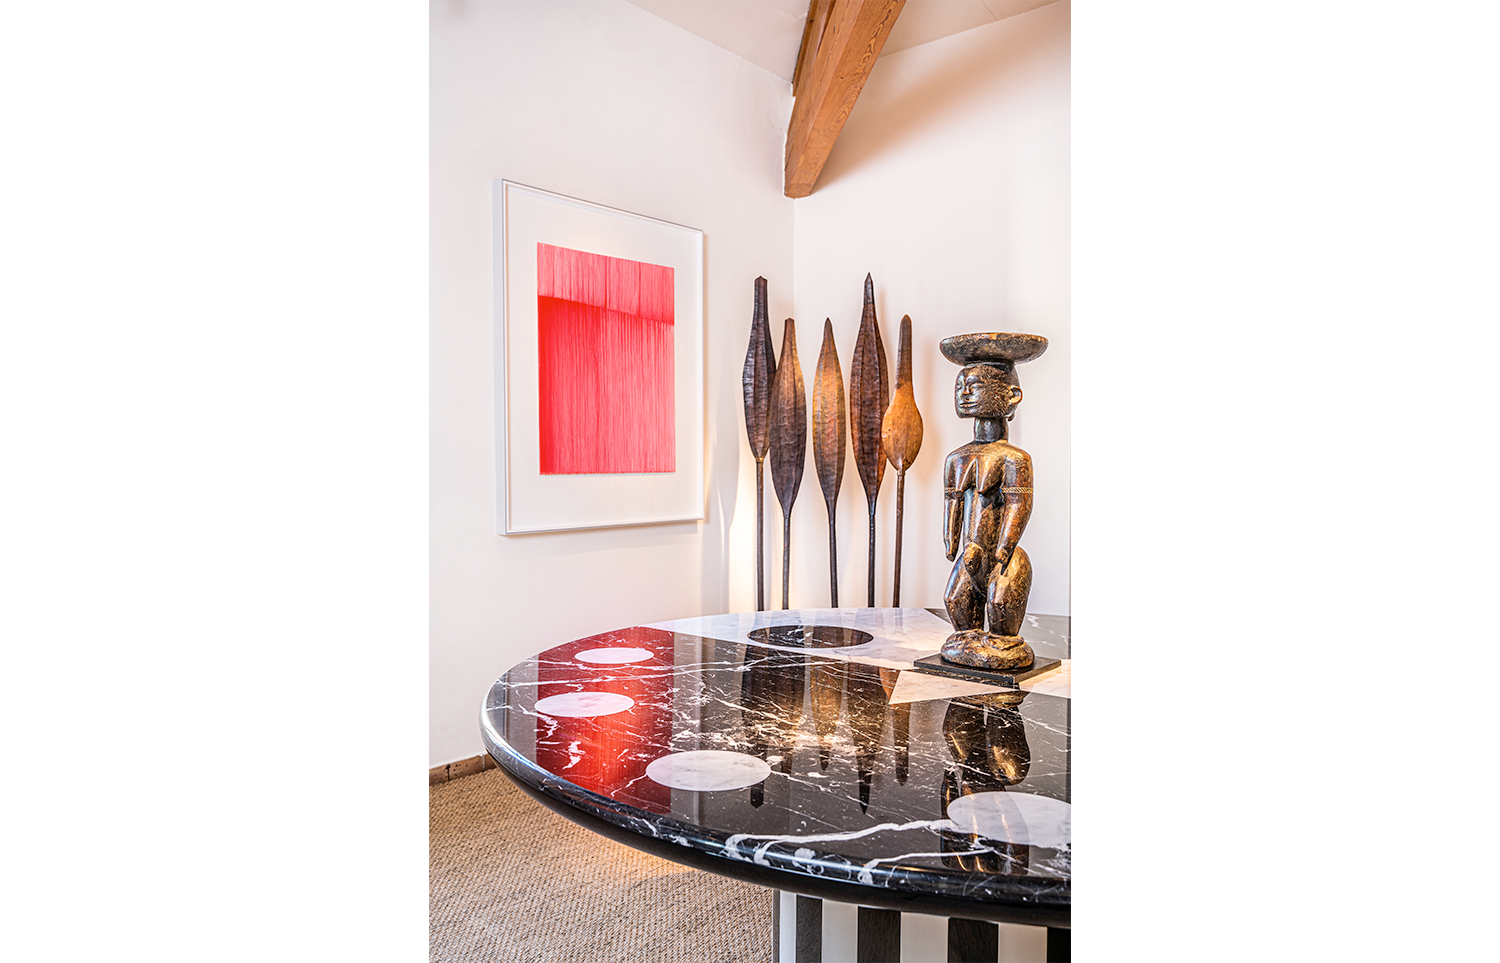 Alessandro Mendini - Lucas Ratton x kamel mennour x Galerie kreo x Jacques Lacoste in Saint-Tropez